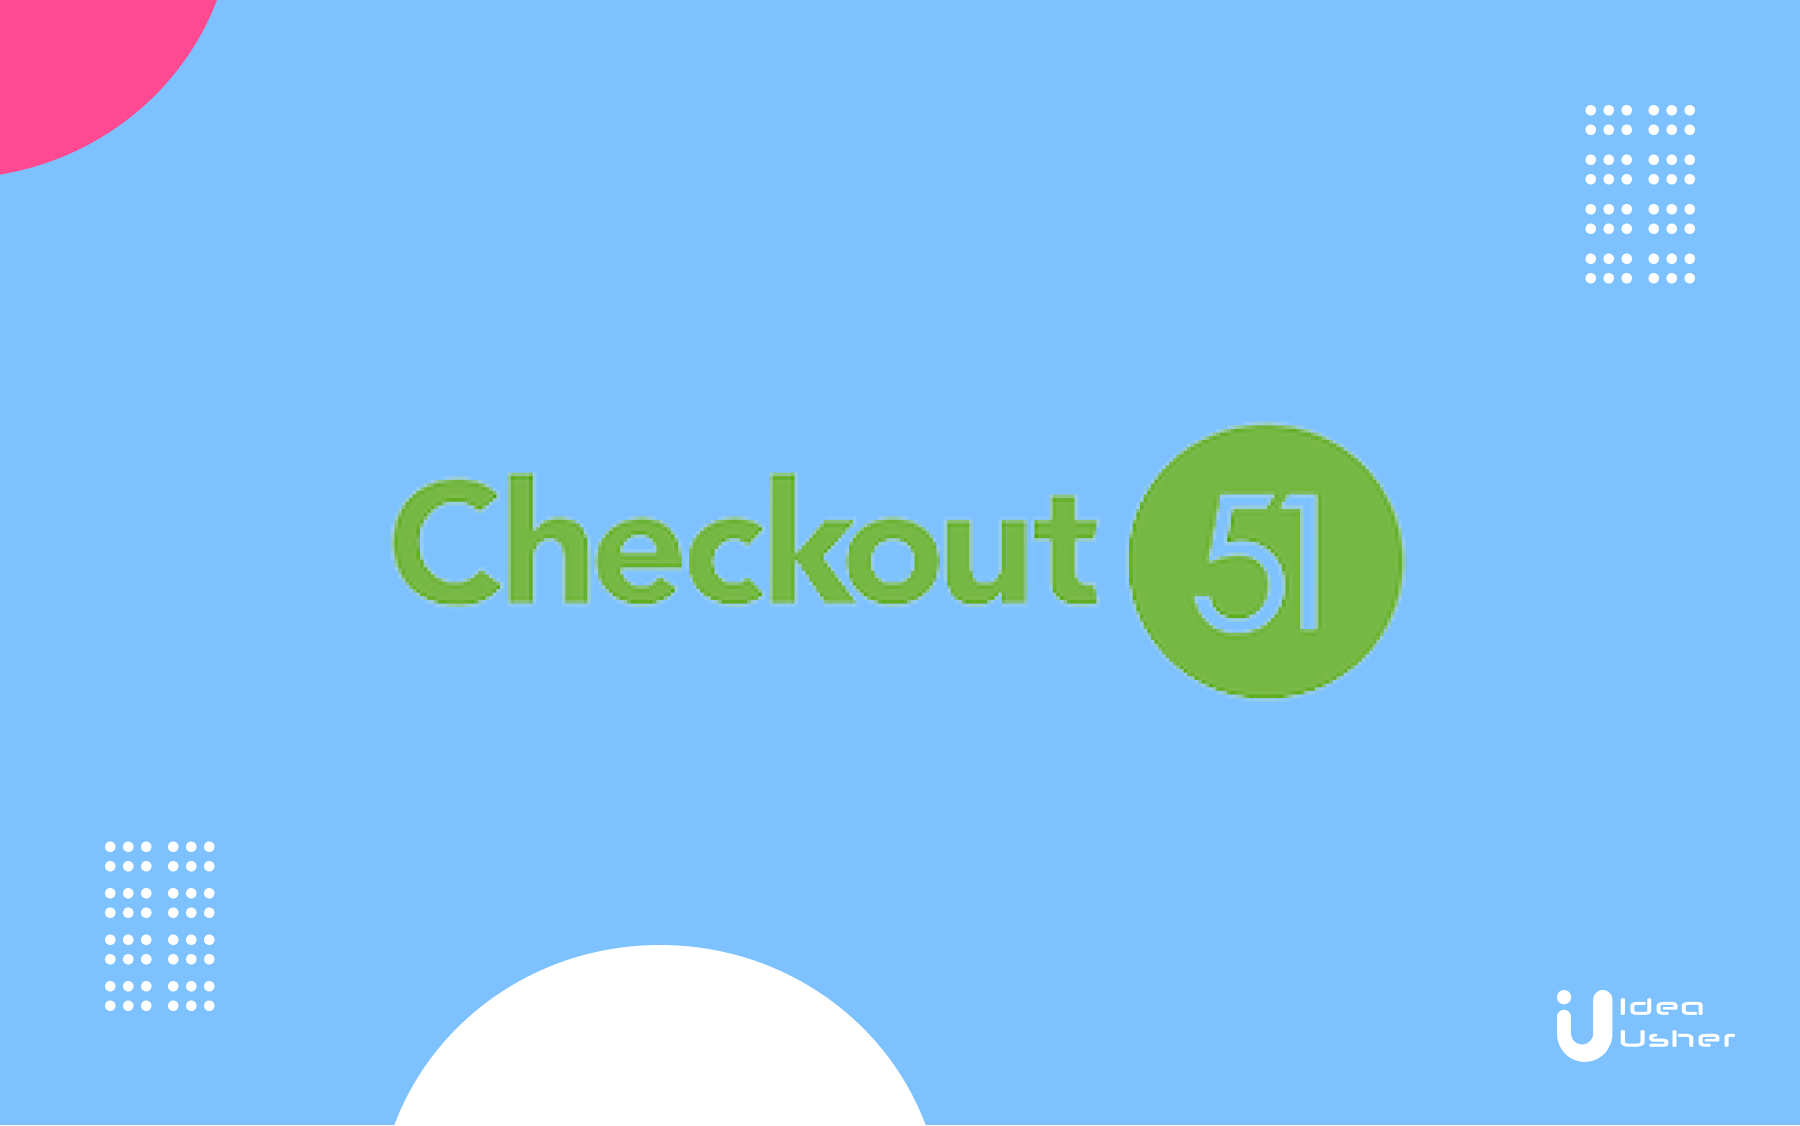 Checkout 51